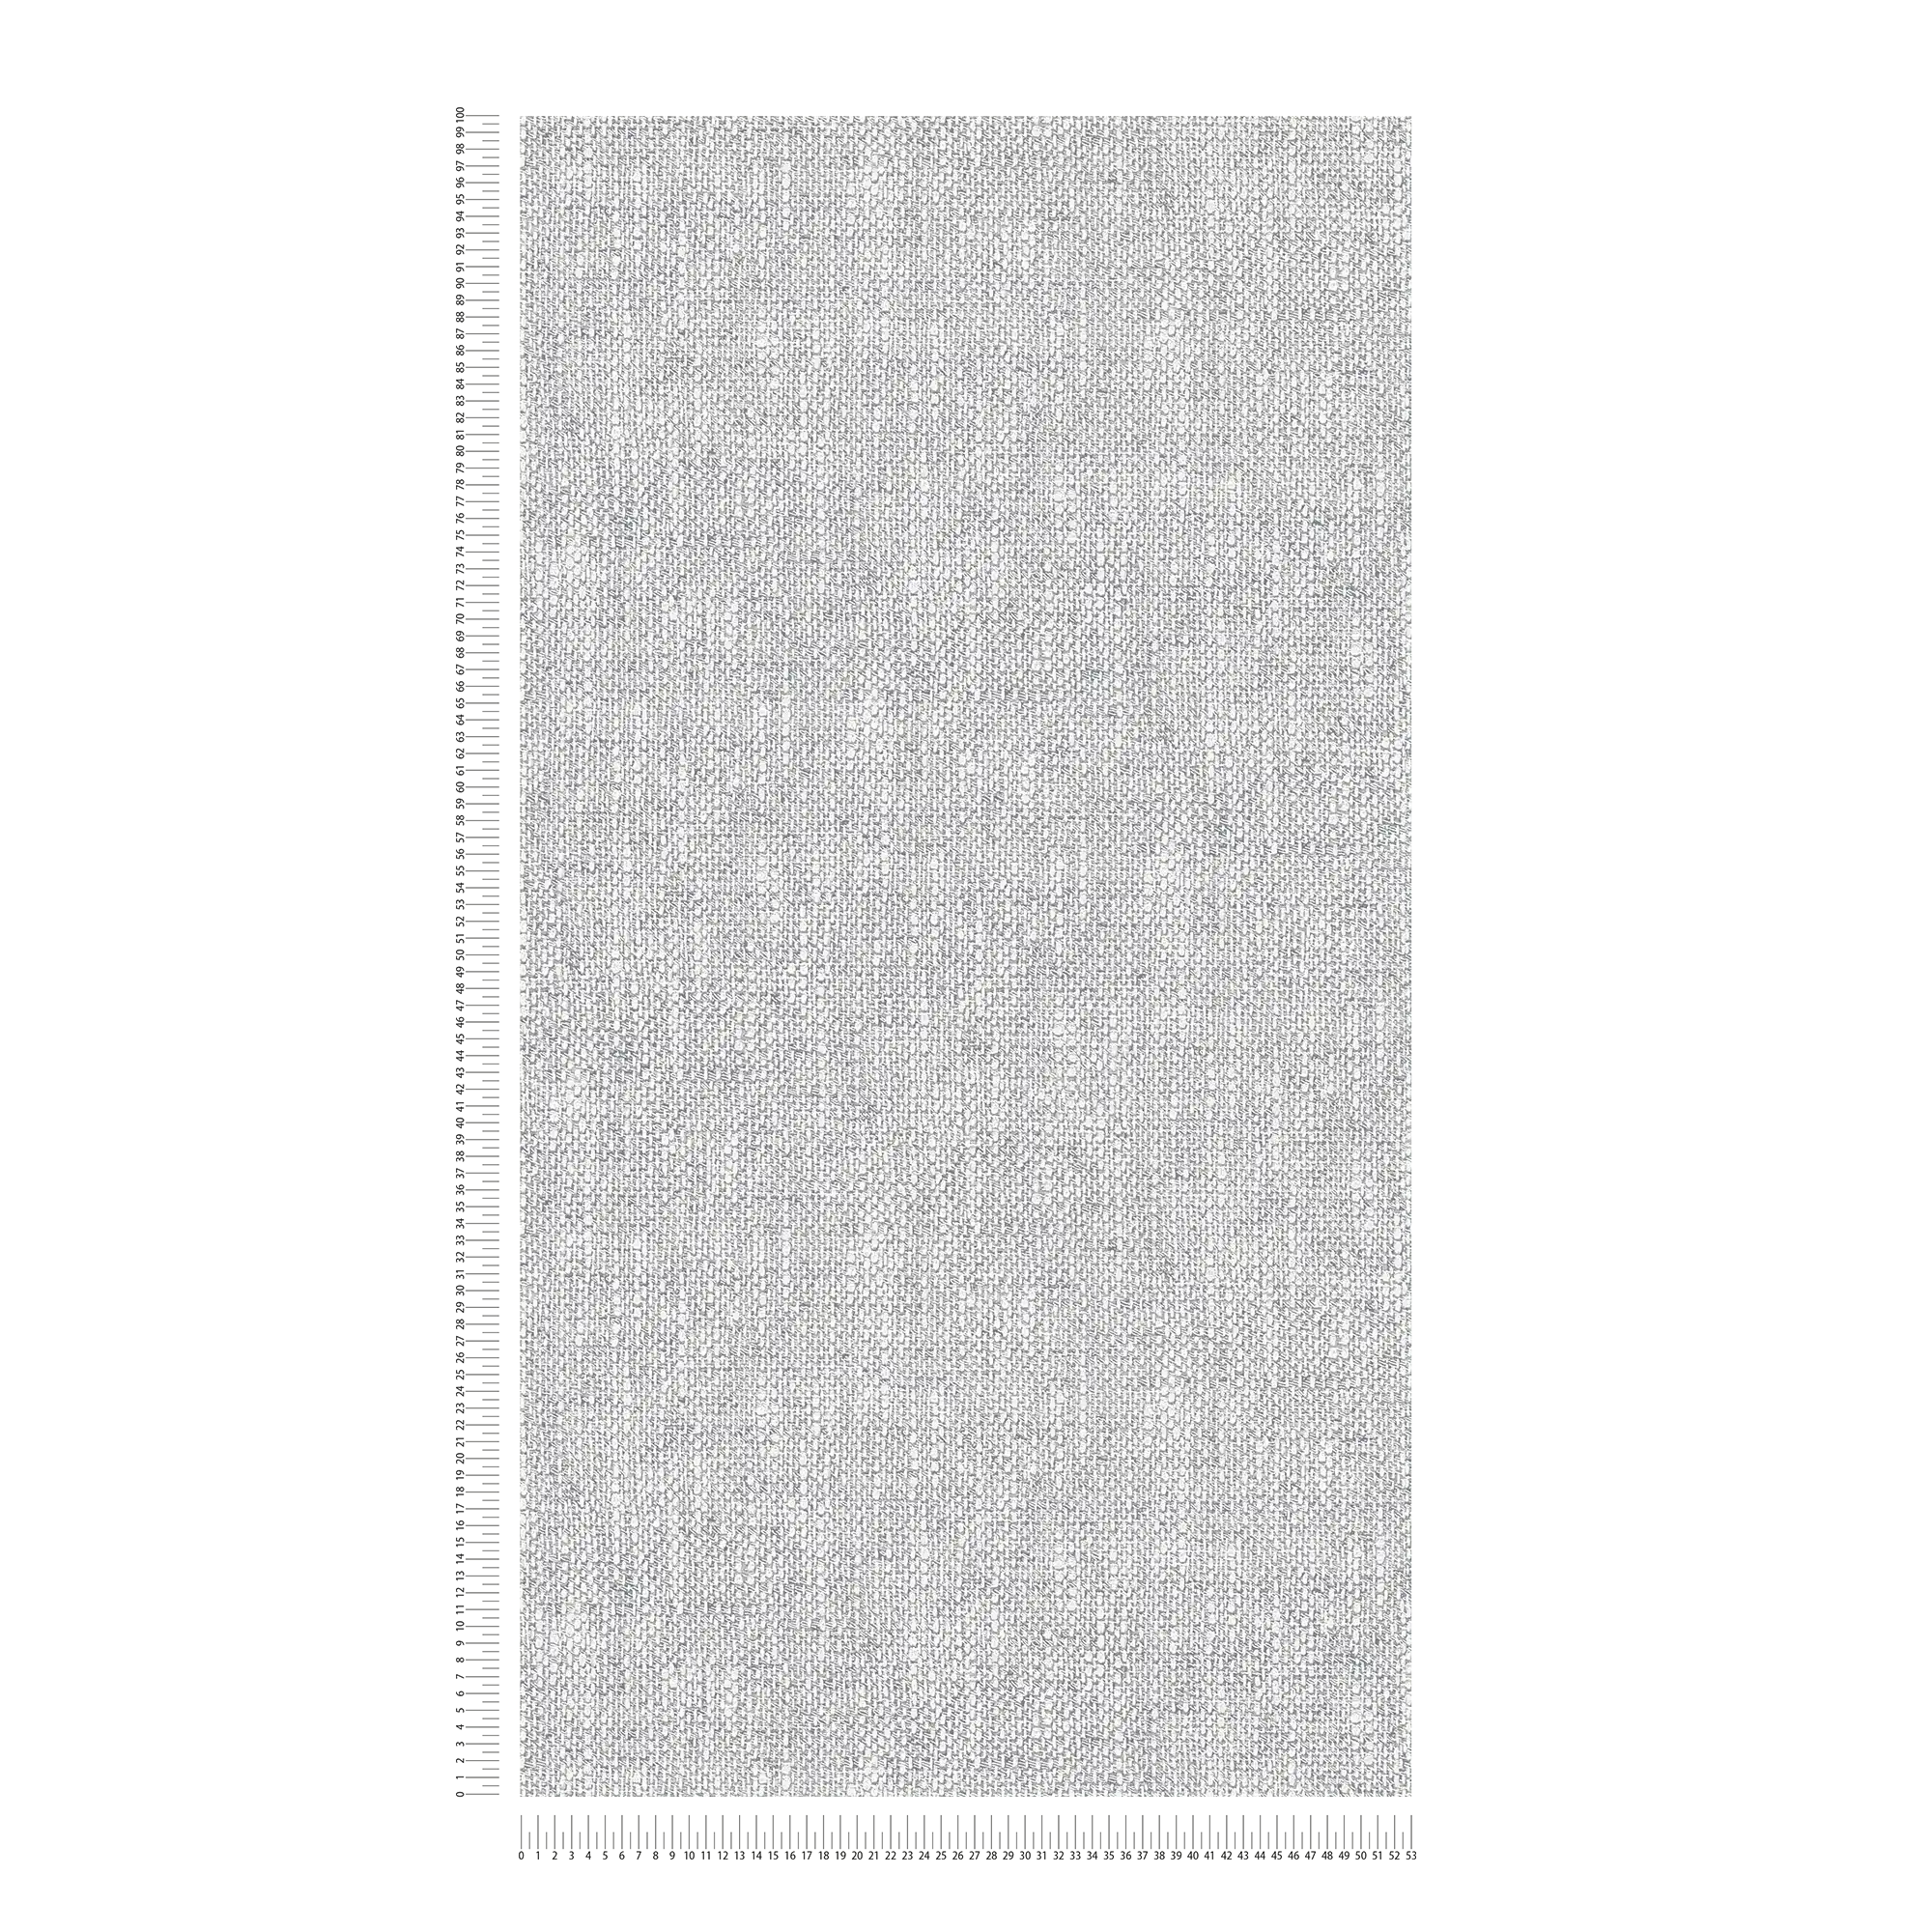             Papel pintado no tejido con aspecto de tela realista - gris, blanco
        